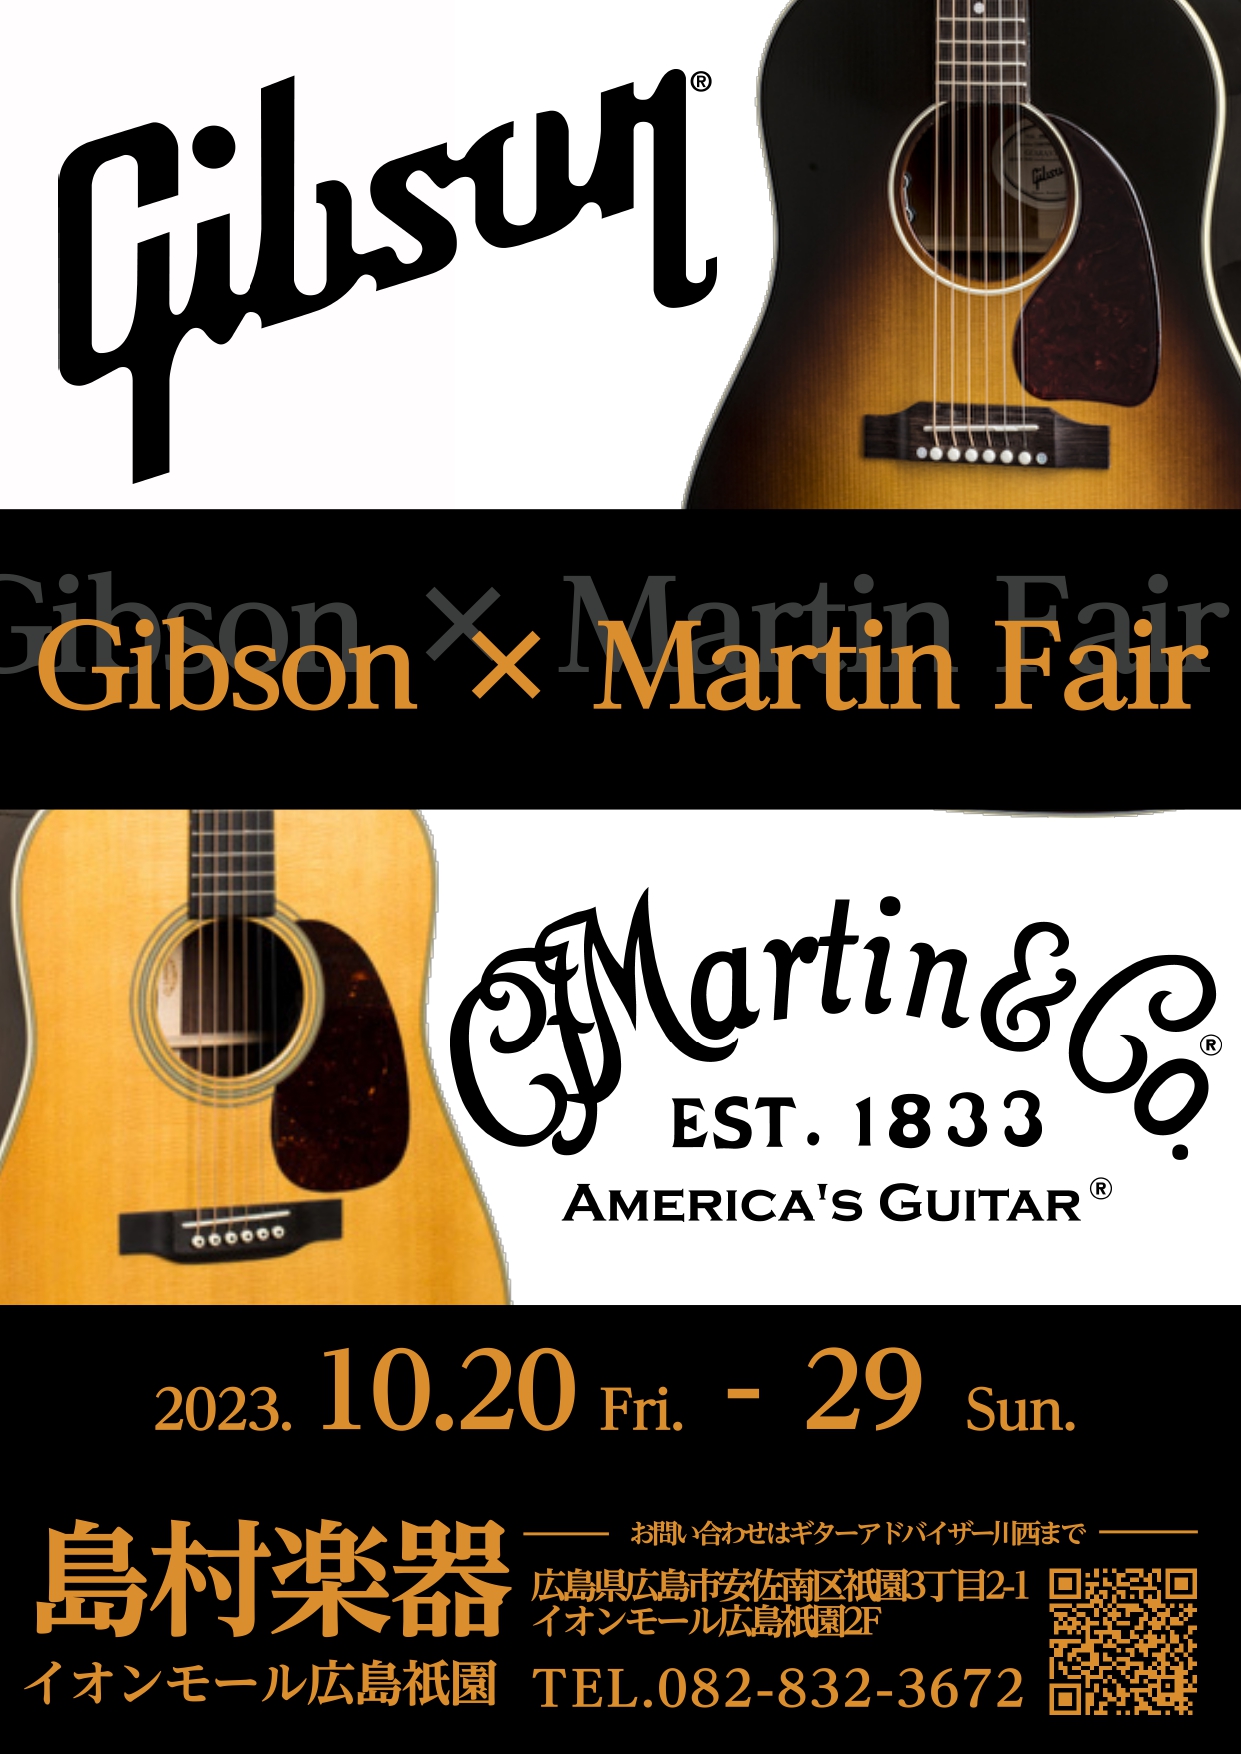 こんにちは！広島祇園店ギター担当の川西です！ 今回はなんと…！『Gibson Martinフェア』を開催します！お求めの方は今がチャンス！ ご興味をお持ちの方はもちろん、弾いたことない方も是非一度ご試奏ください。お気軽に広島祇園店へご来店ください♪ CONTENTSご案内の予約はこちらからHummi […]